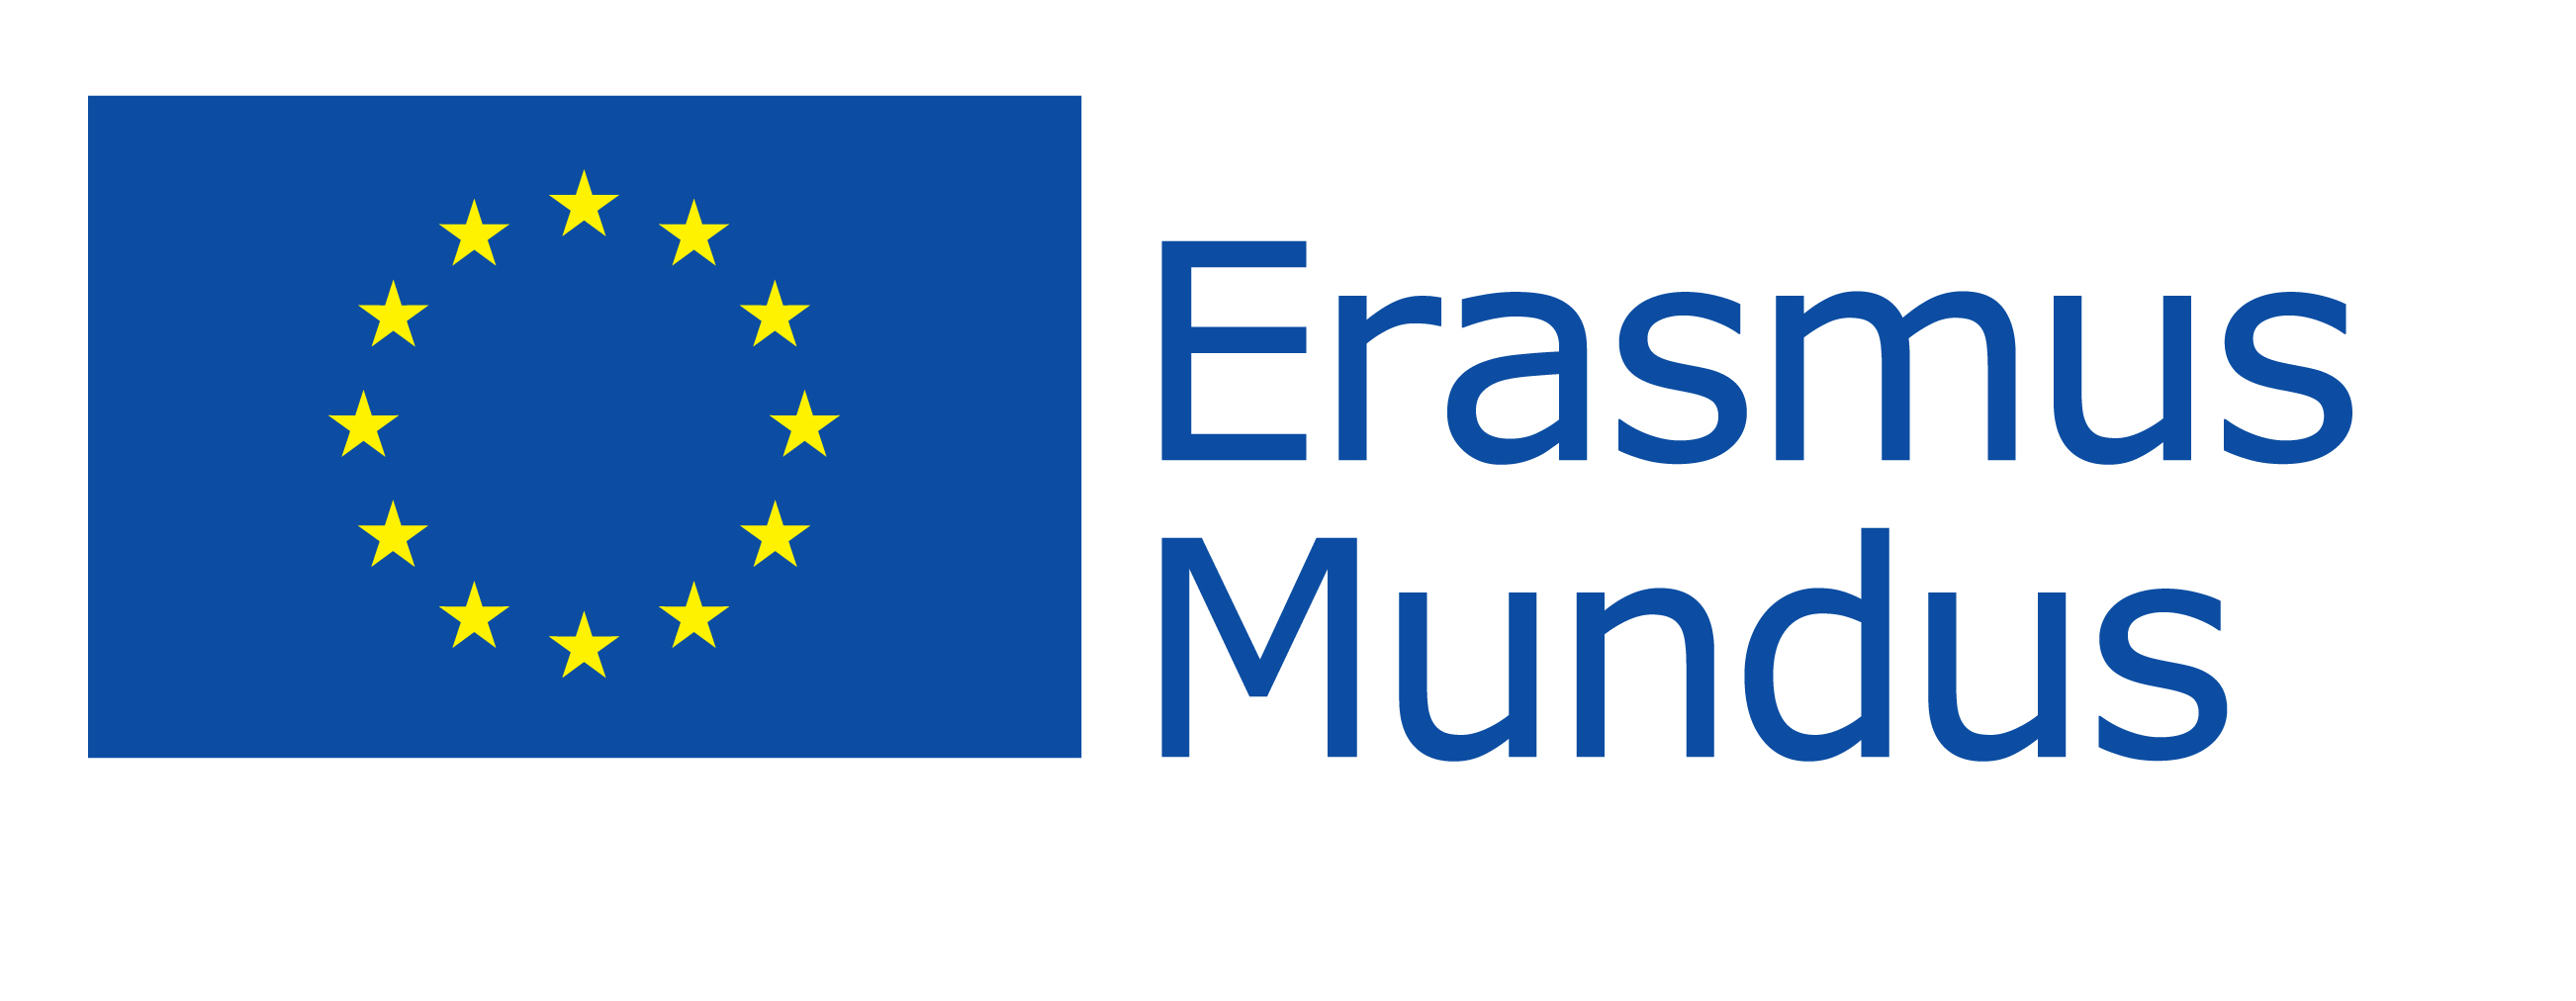 The Erasmus-Mundus Program